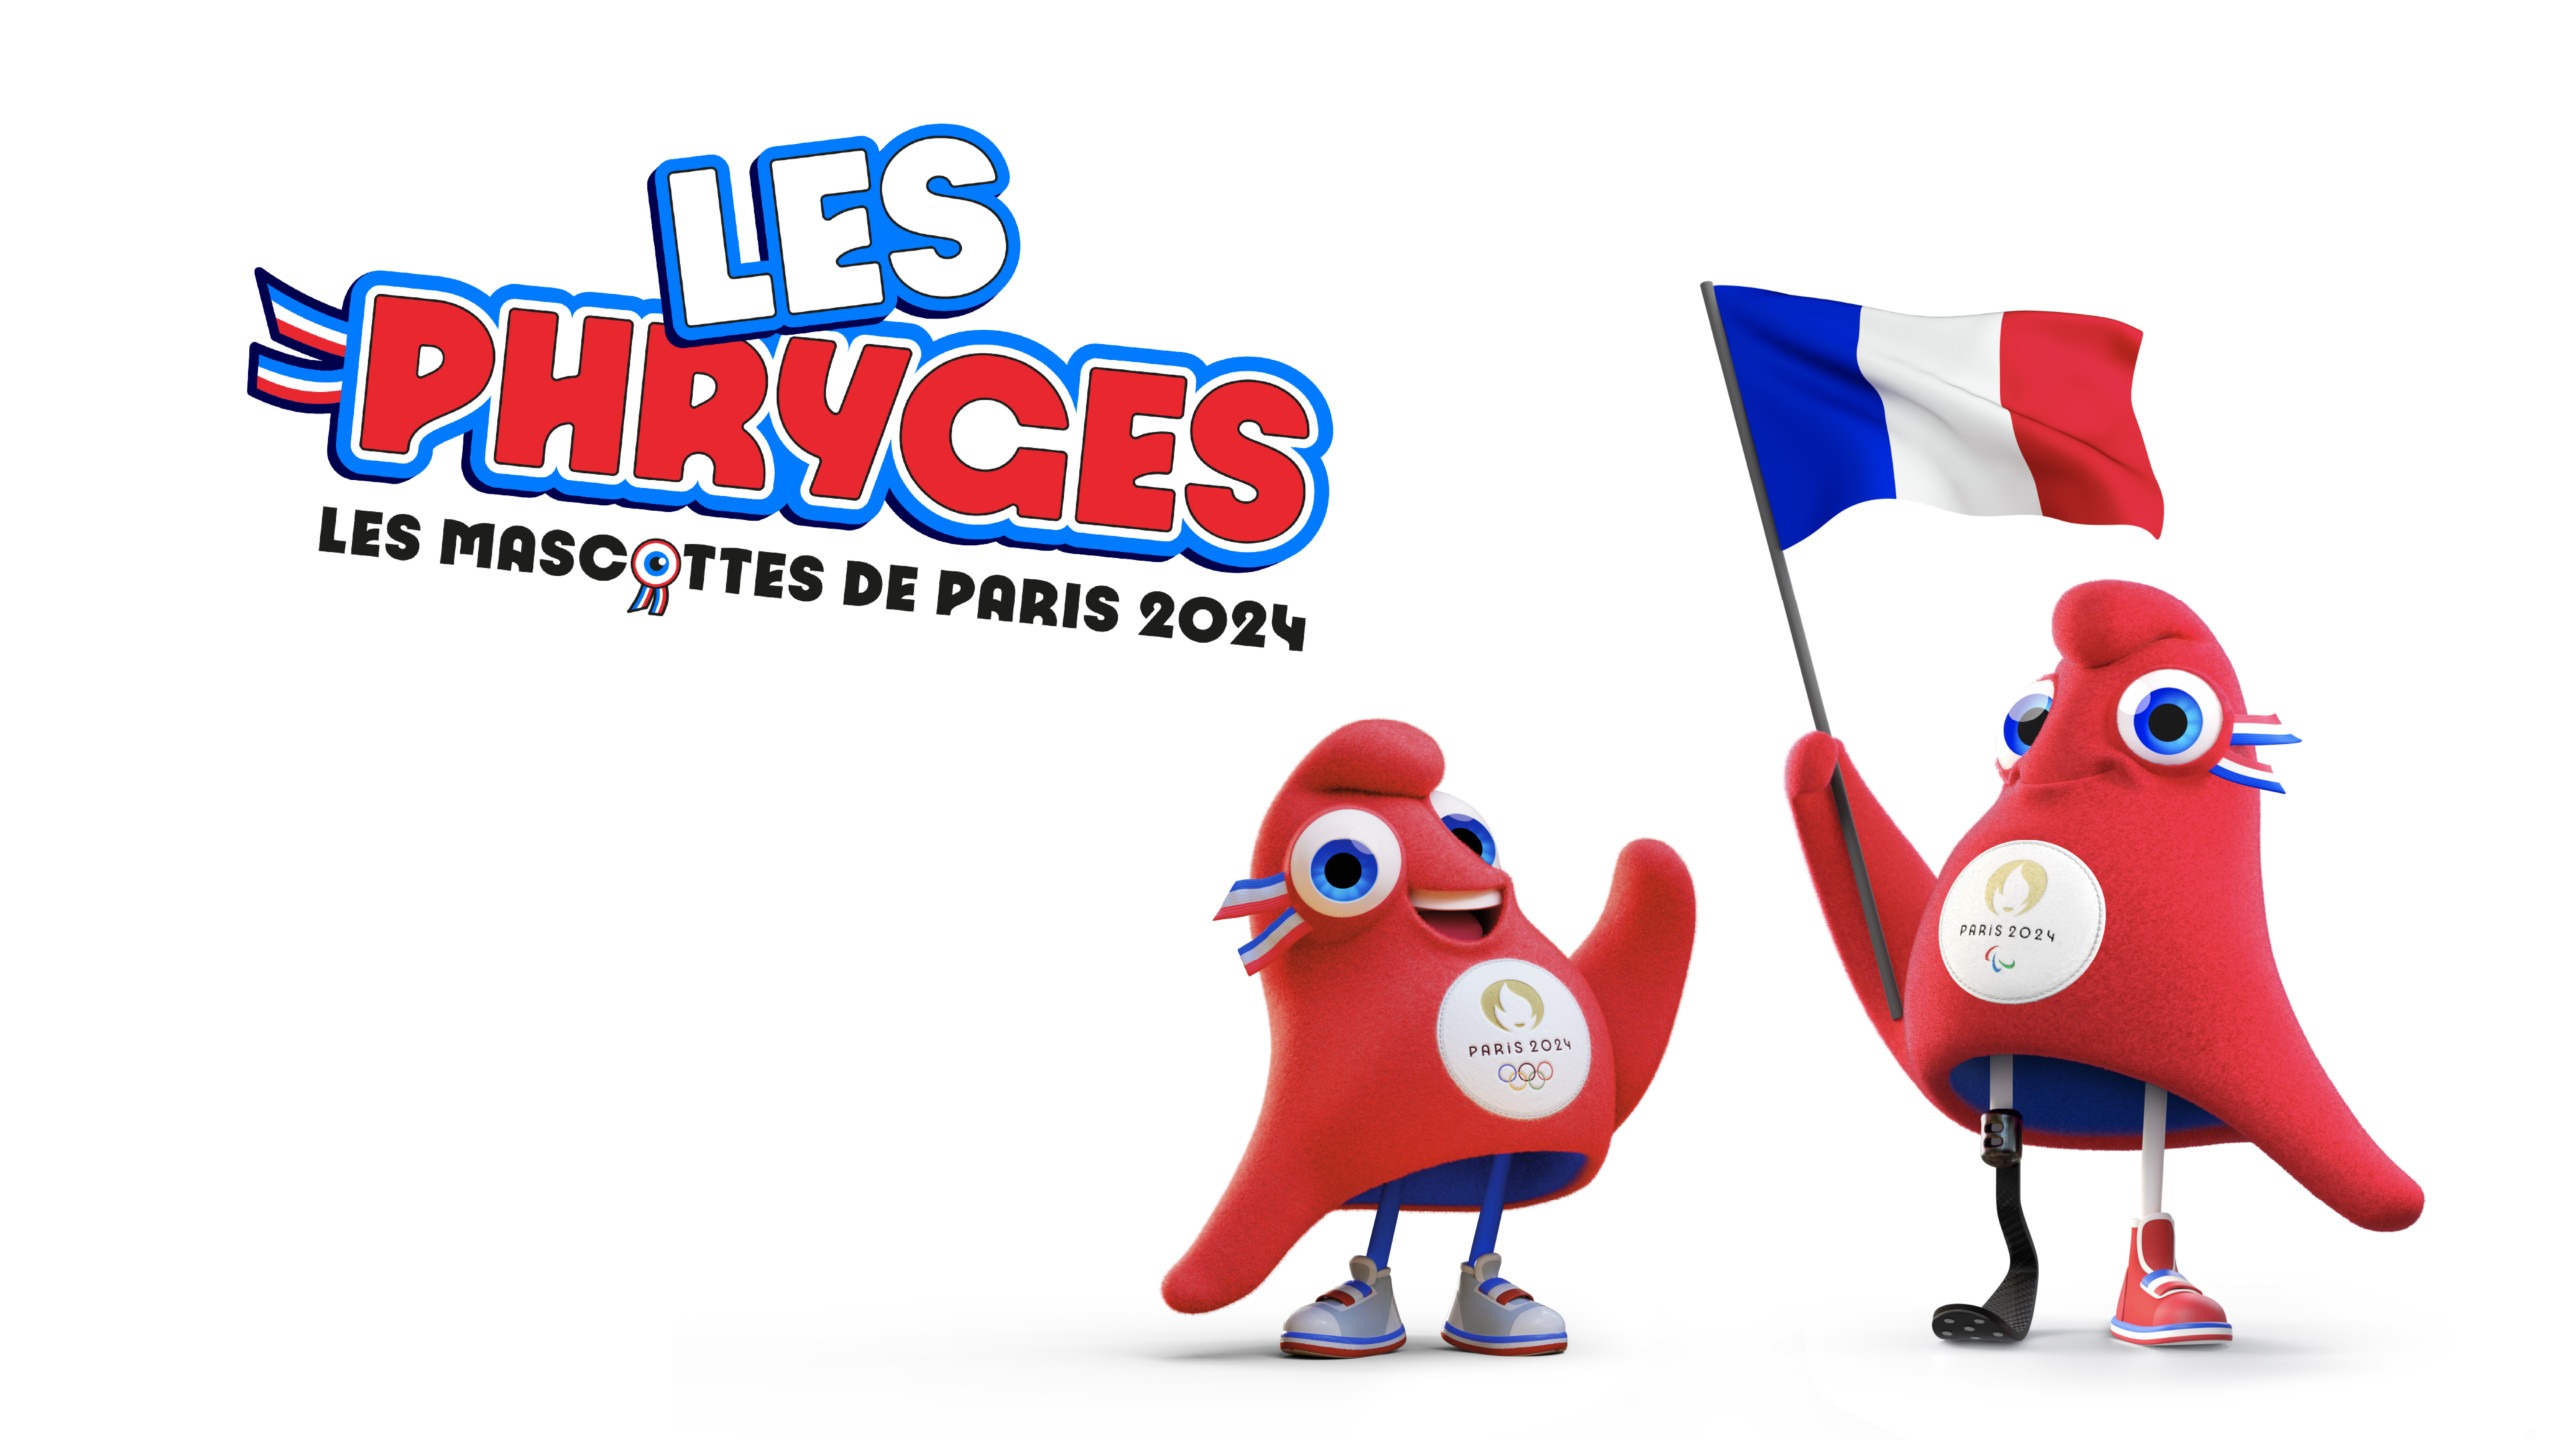 Paris 2024 dévoile ses mascottes, les "Phryges" Comité Paralympique et